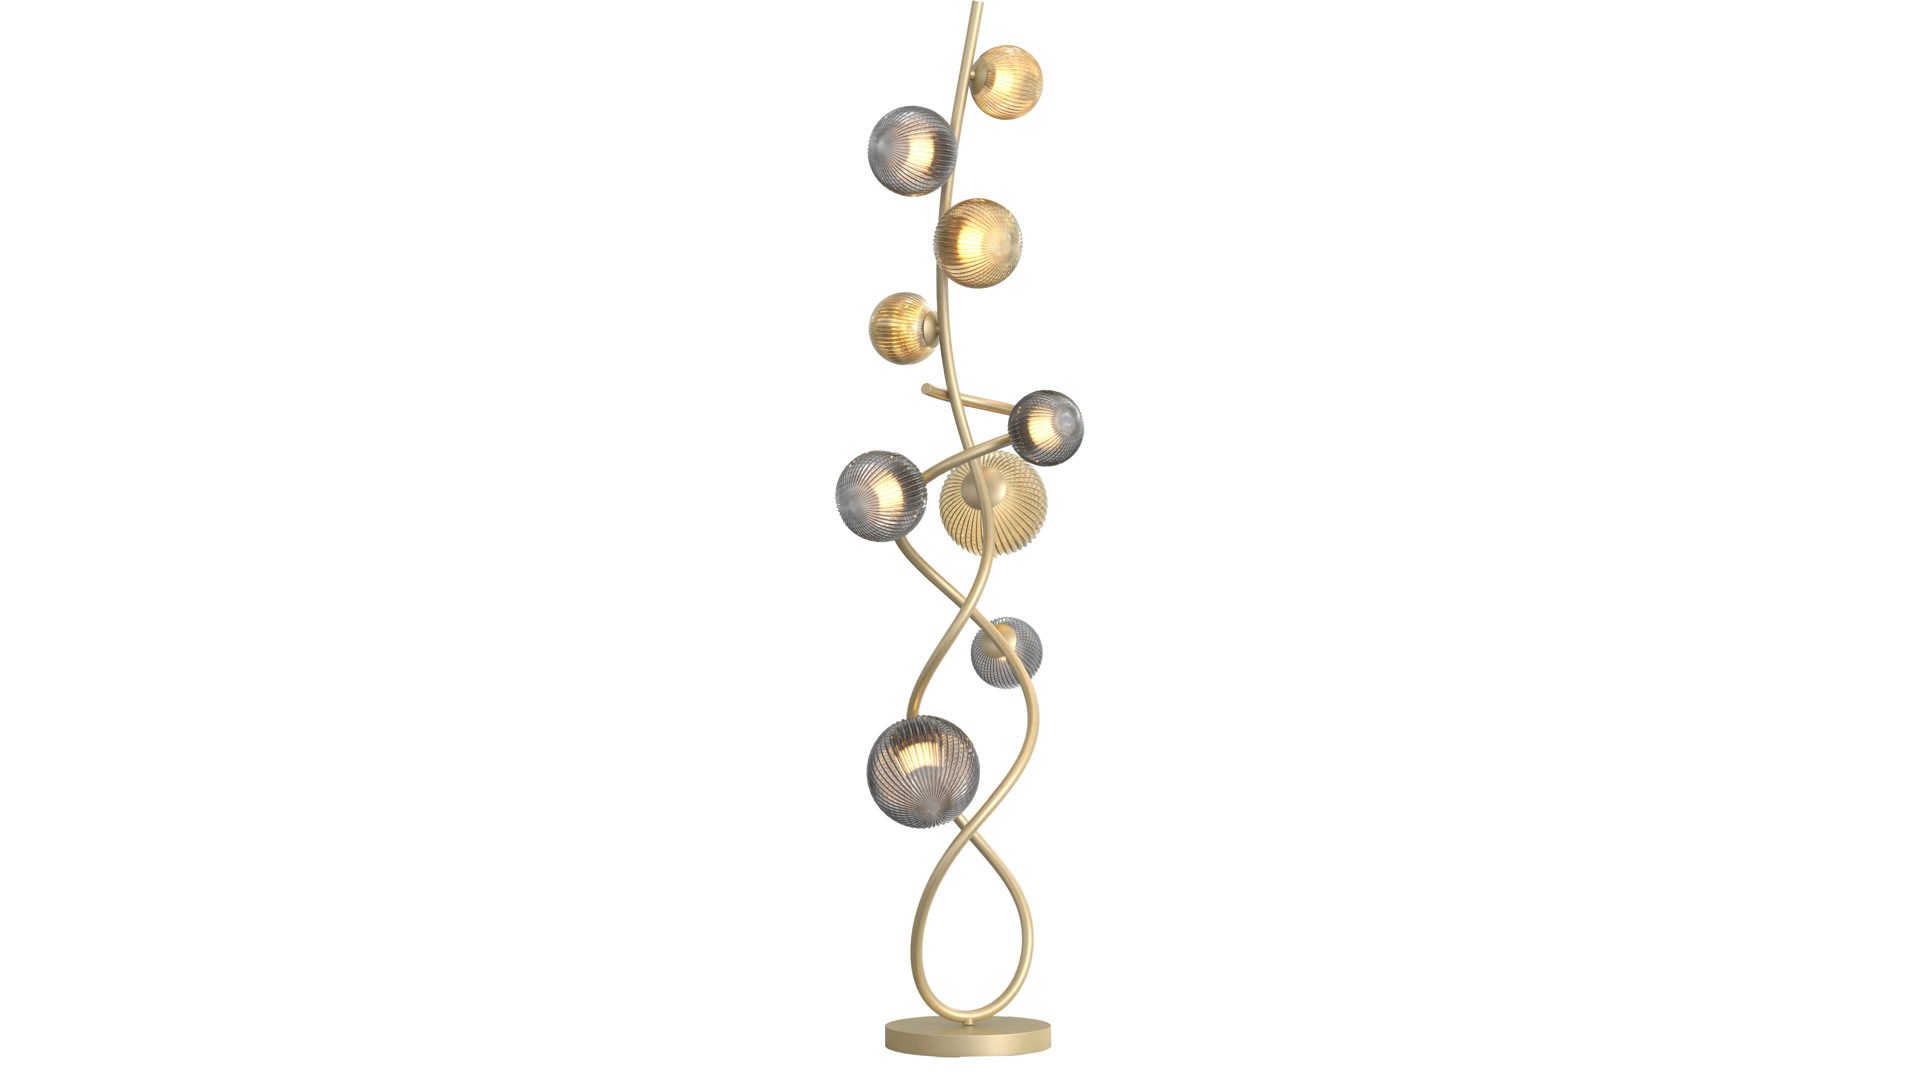 Stehleuchte Global technics aus Glas in Gold Leuchten Serie Metz - Stehlampe Rauch, Bernstein & Gold - Höhe ca. 140 cm